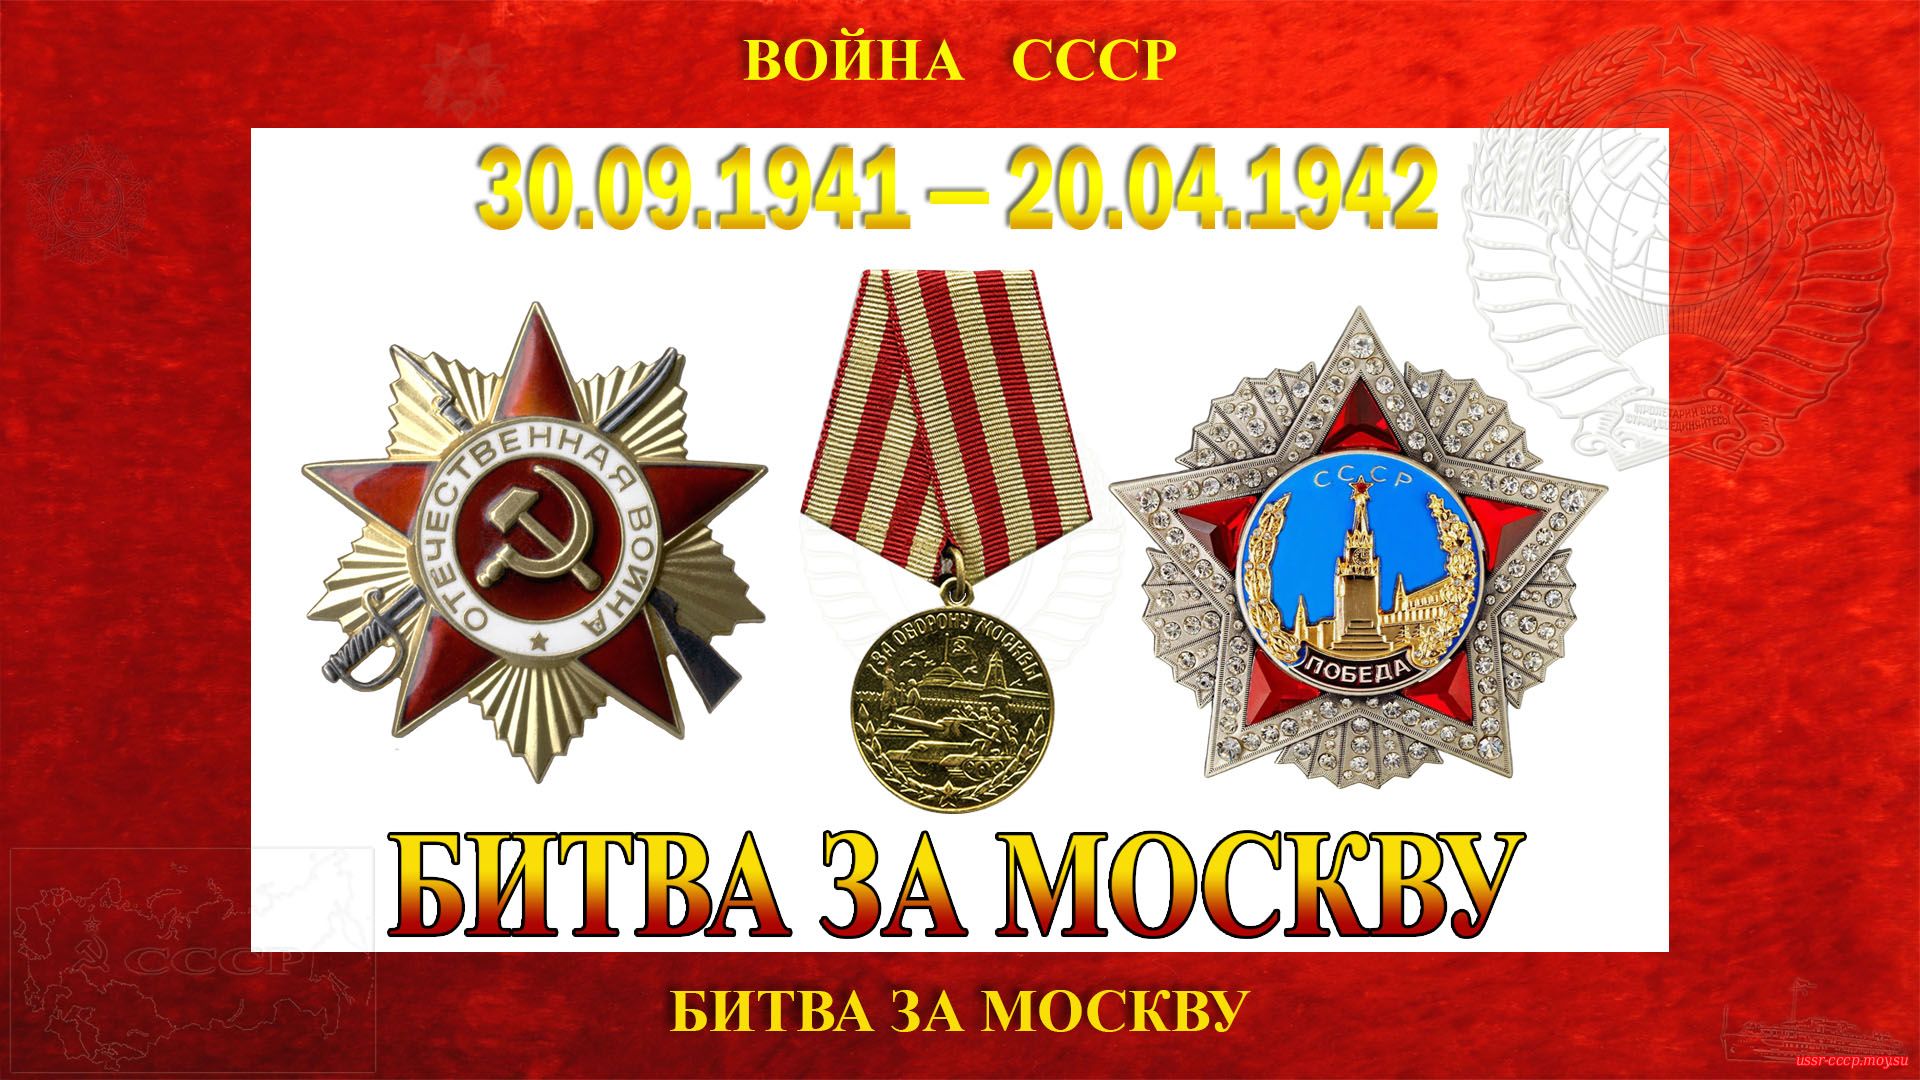 Битва за Москву — Московская битва — Битва под Москвой (30.09.1941 — 20.04.1942)